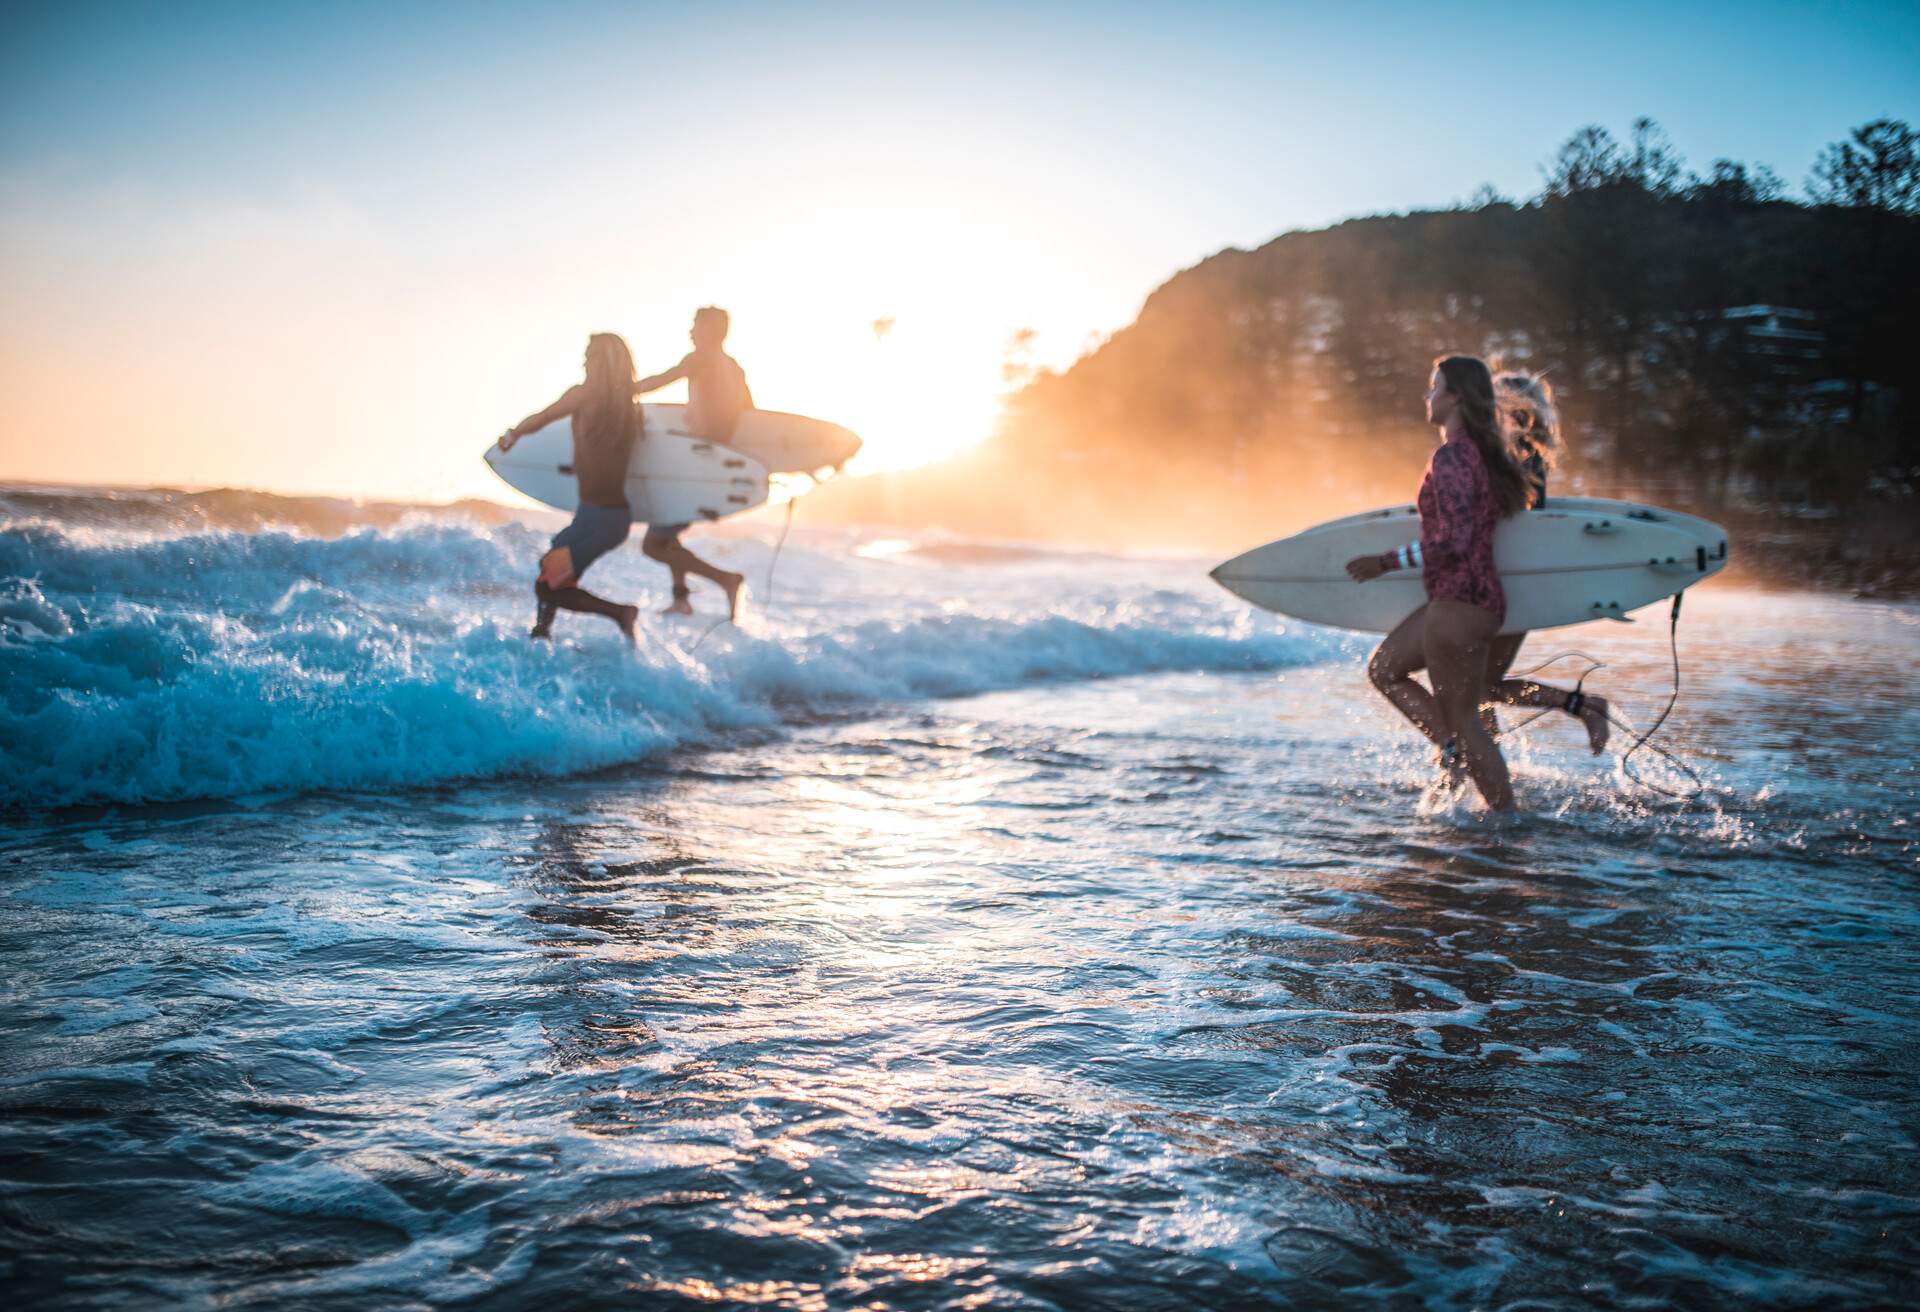 DEST_AUSTRALIA_PEOPLE_SURFING